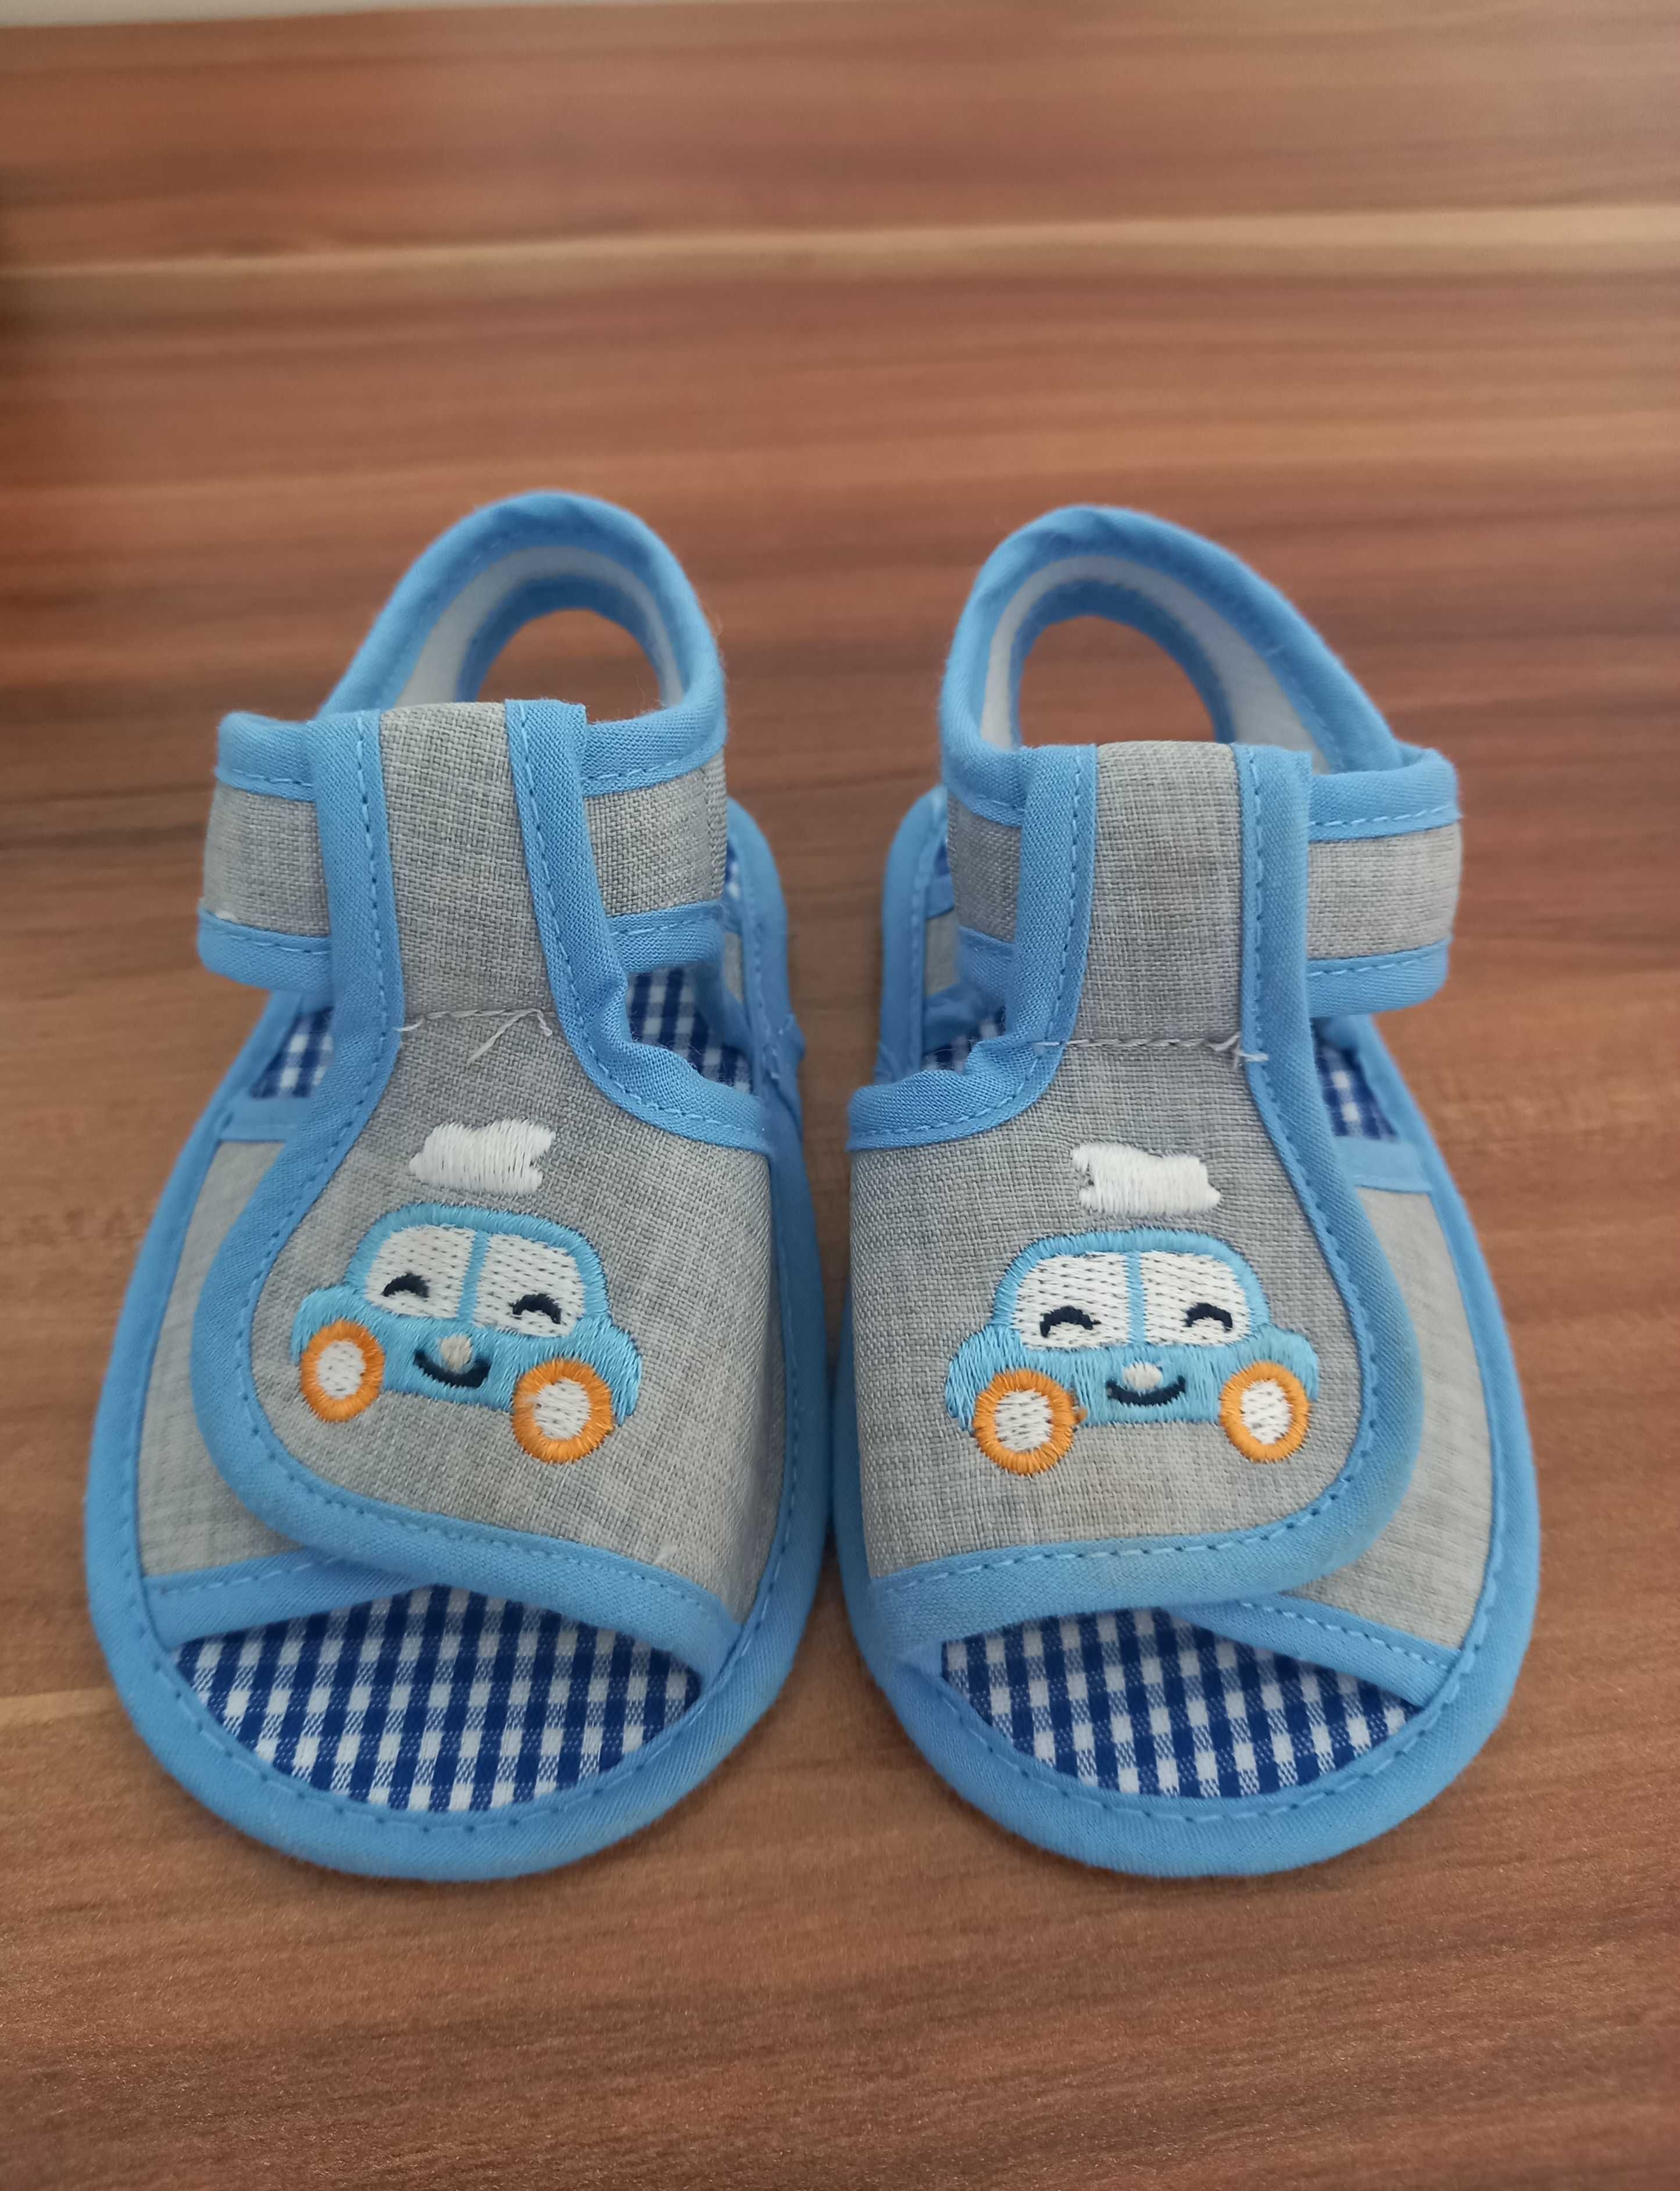 Sandałki dla chłopca